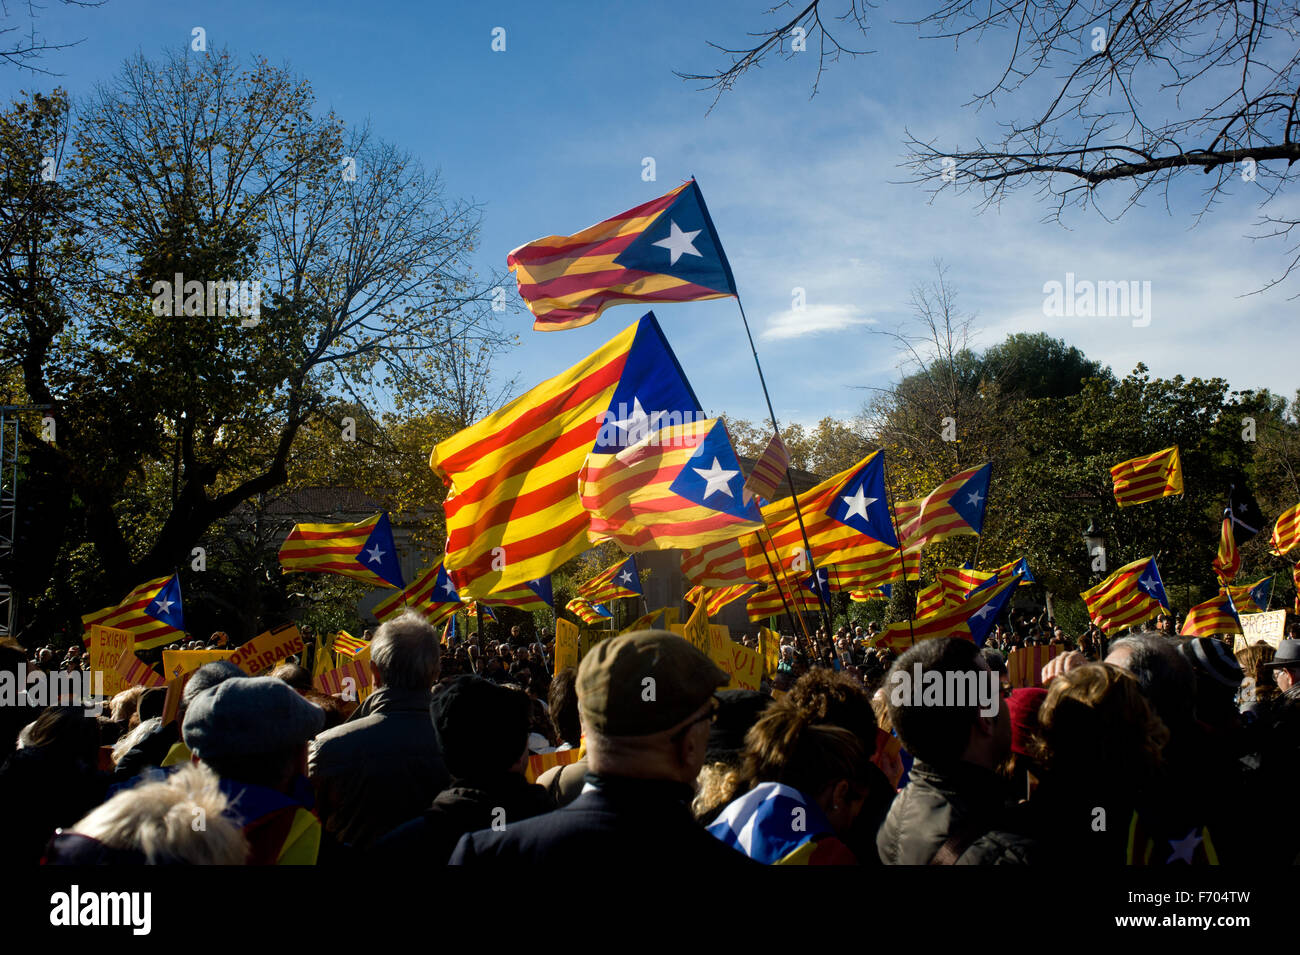 Barcelone, Espagne. 22 Nov, 2015. En ce dimanche ensoleillé personnes vague estelada flags (symbole de l'indépendance catalane) au Parc de la Ciutadella de Barcelone, Espagne, le 22 novembre, 2015. Plus de trois mille personnes se sont rassemblées dans le Parc de la Ciutadella à Barcelone exigeant un accord entre les deux partis indépendantistes dans le Parlement Catalan (Pel Junts tr et cuvette). L'impossibilité d'élire un président pour le Parlement Catalan a bloqué le processus d'indépendance. Crédit : Jordi Boixareu/Alamy Live News Banque D'Images